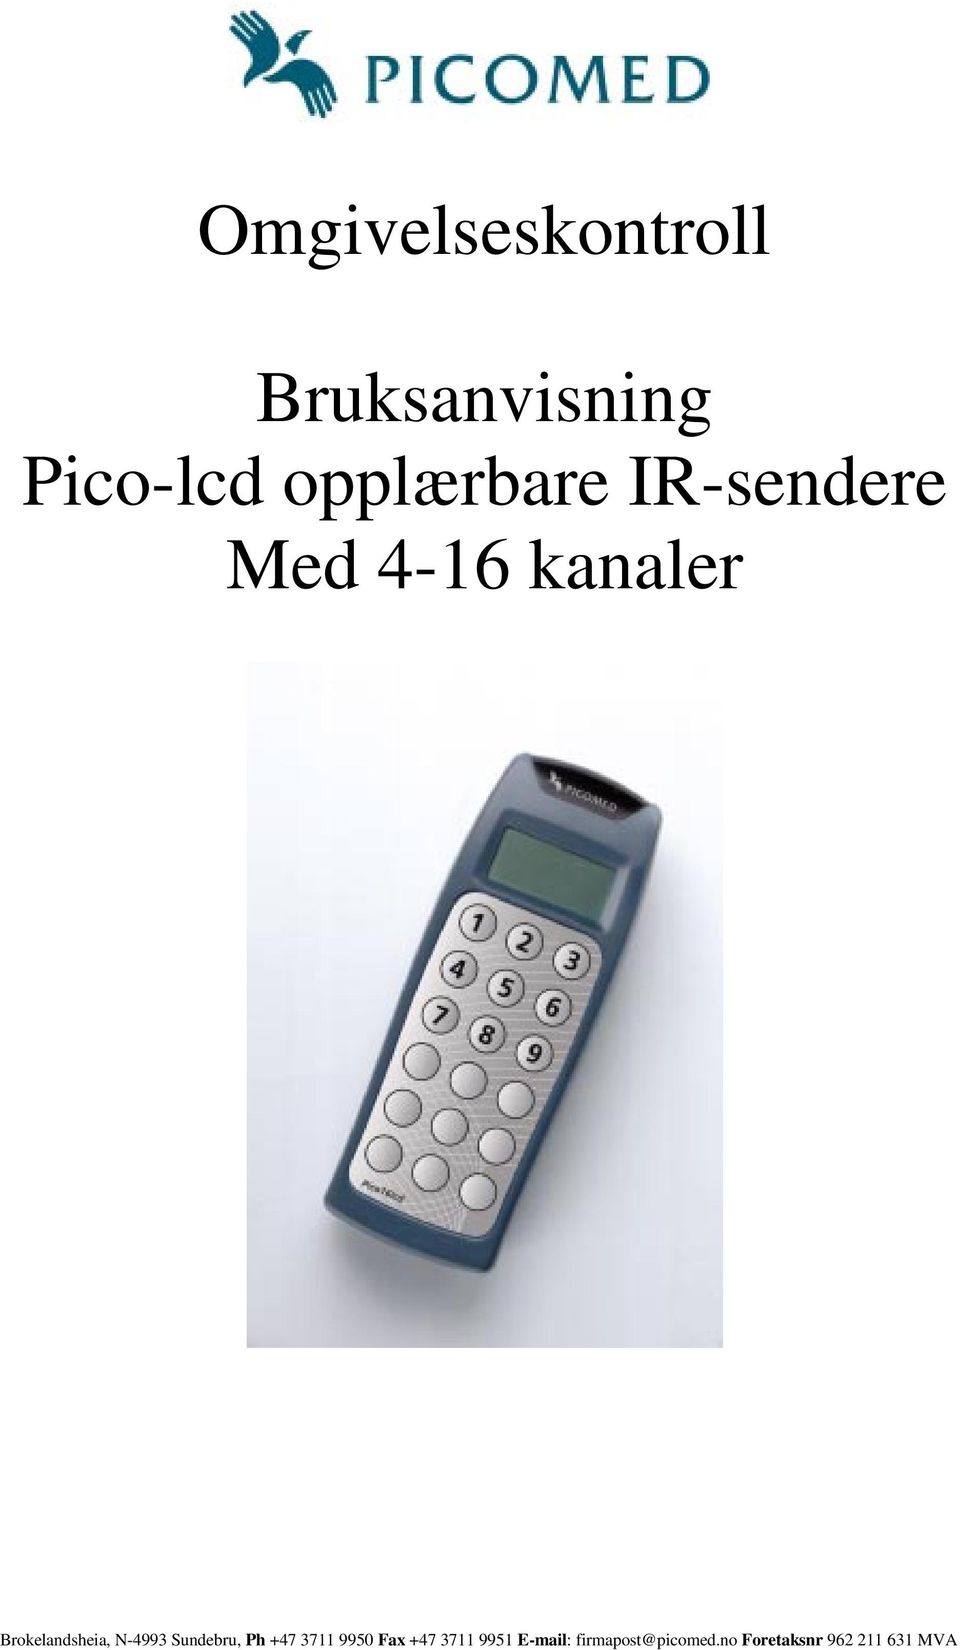 Brokelandsheia, N-4993 Sundebru, Ph +47 3711 9950